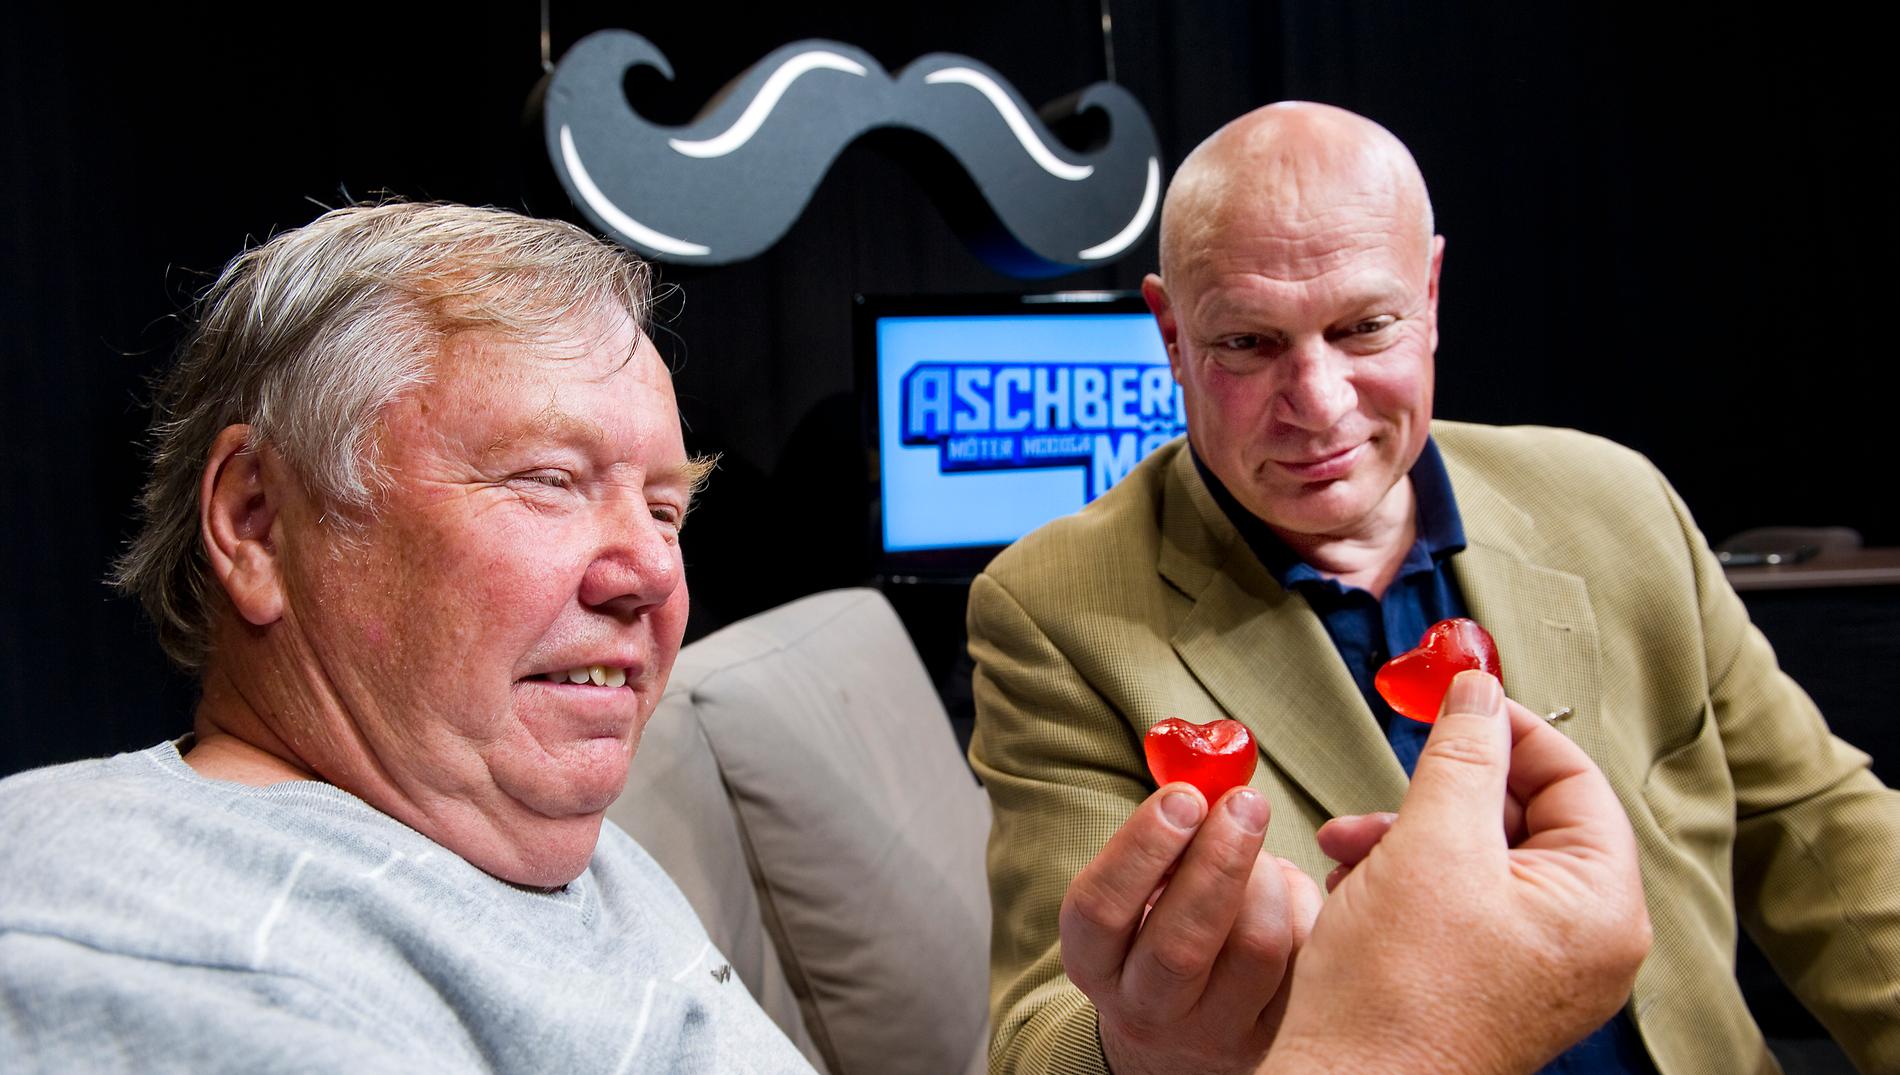 Bert Karlsson med Robert Aschberg  under Mustaschkampanjen, som uppmärksammar prostatacancer.